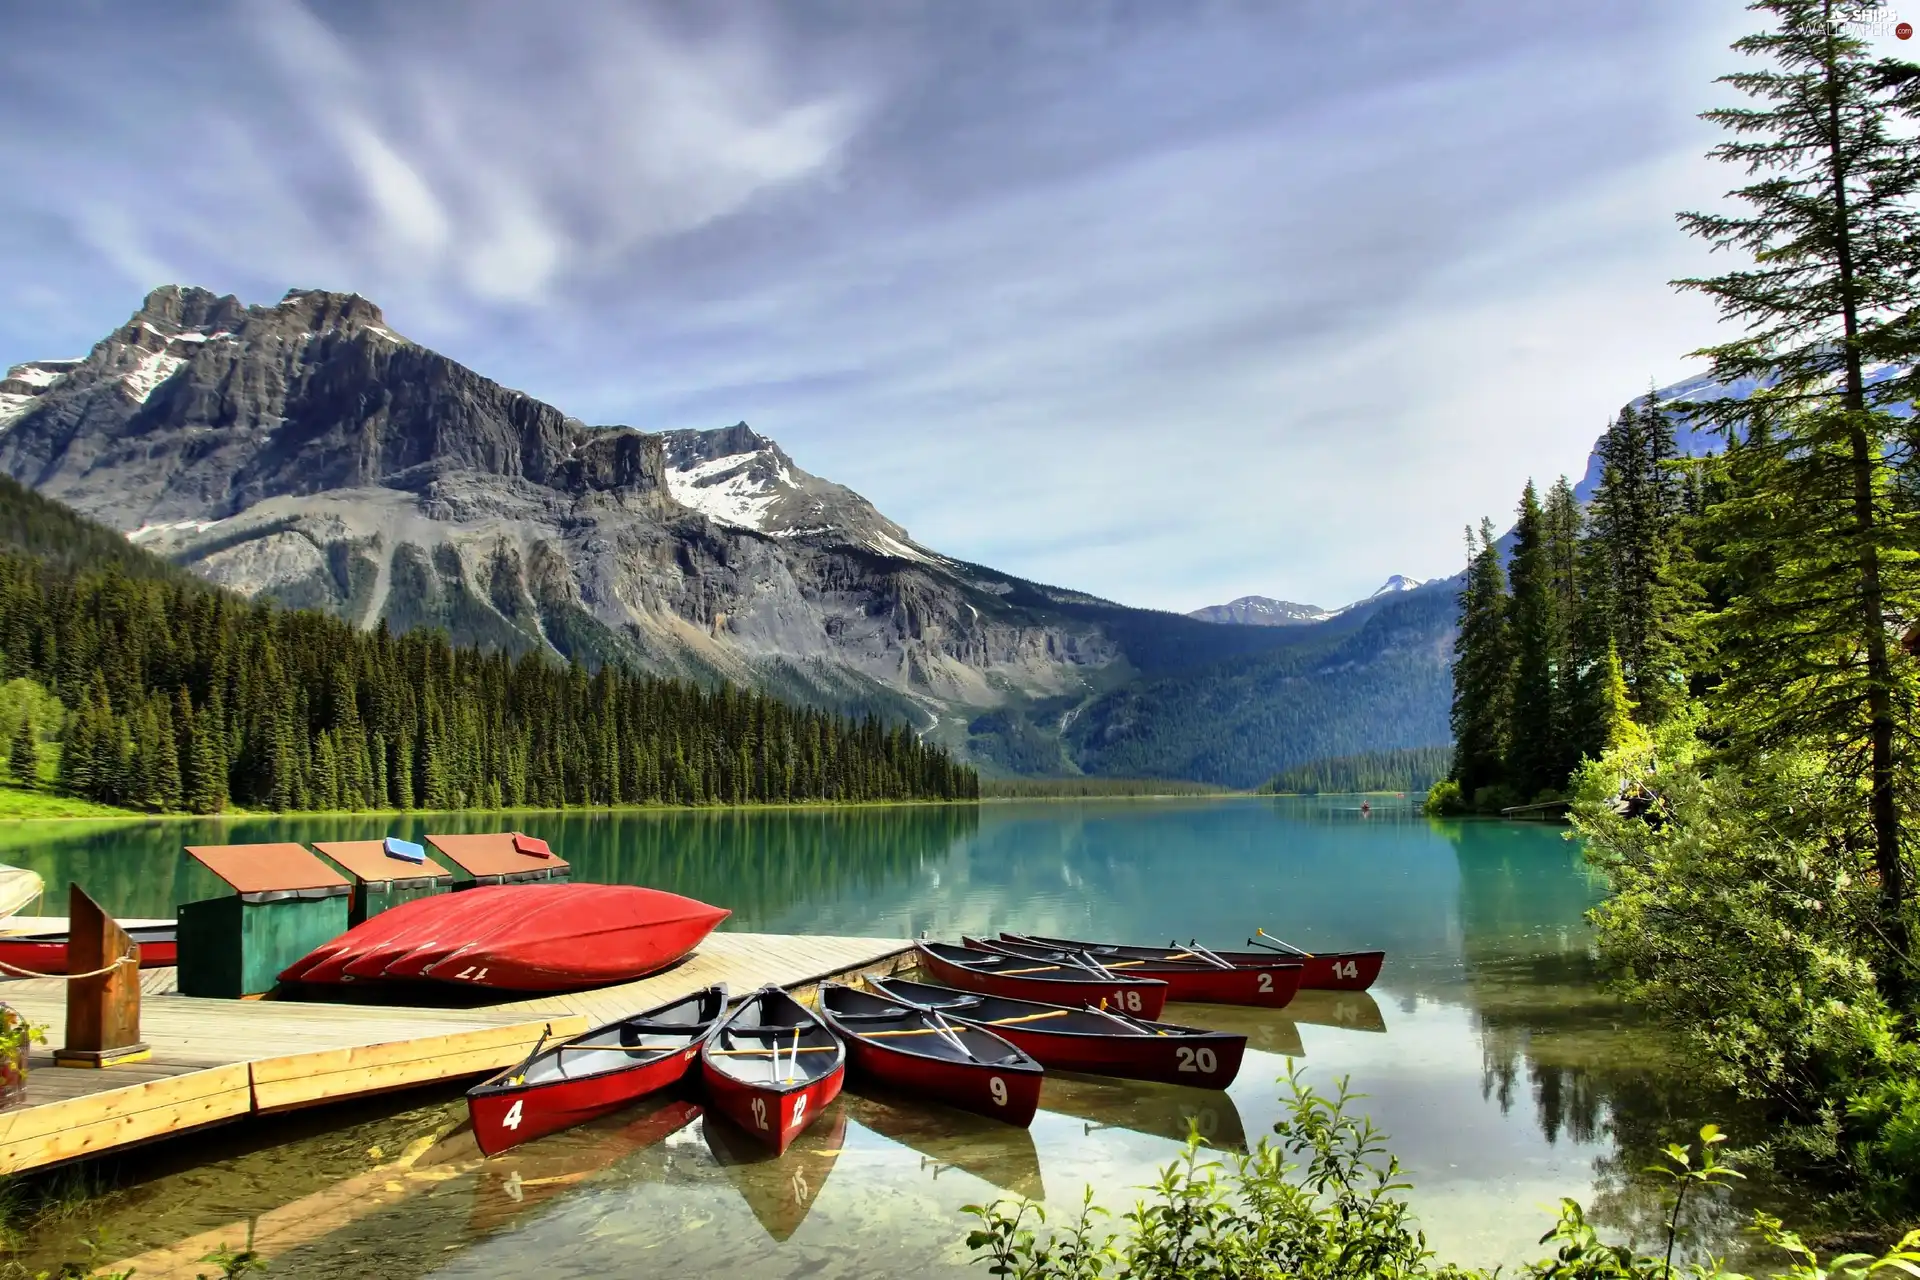 lake, Kayaks, esmerald, Canada, Mountains, Platform